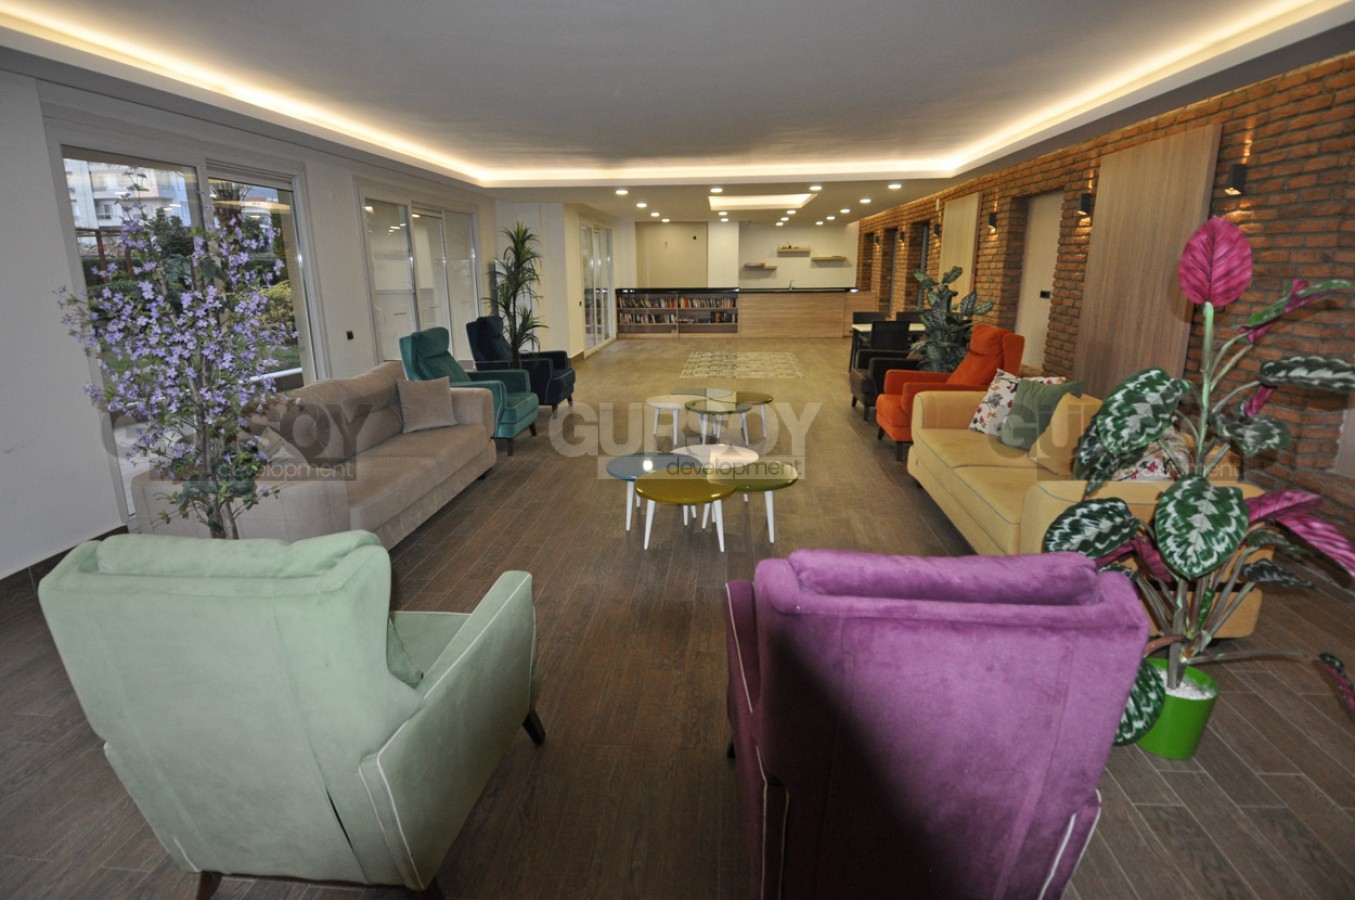 Квартира планировкой 1+1, общей площадью 65 м2 в районе Оба г. Алания в Турции - фото 1